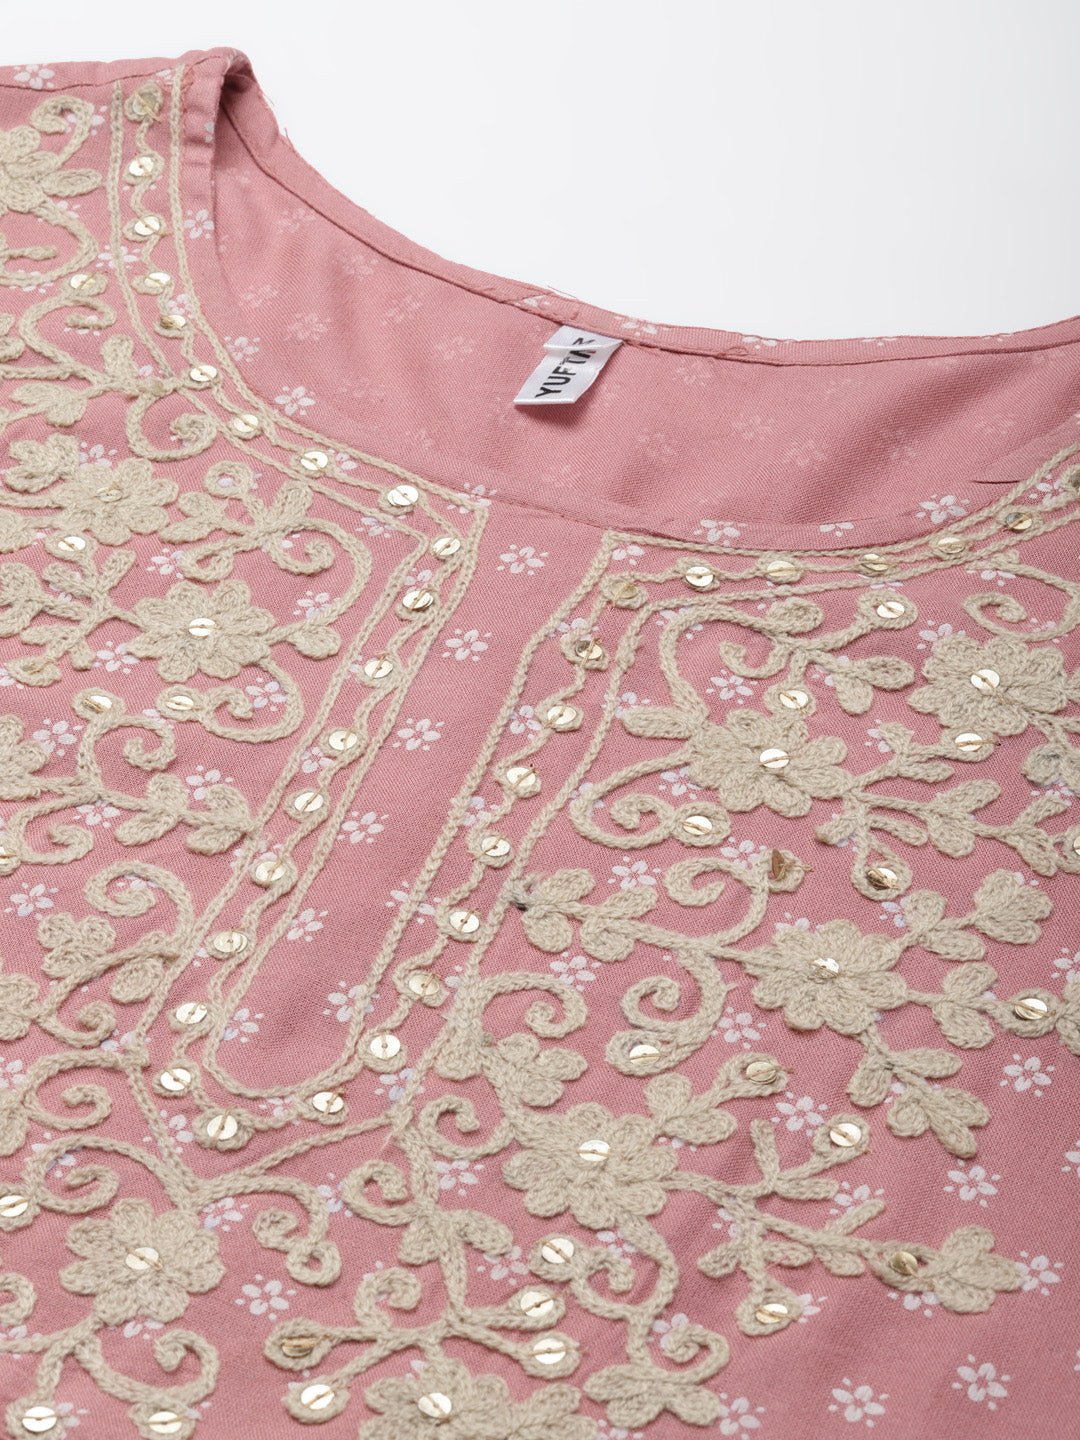 Pink Printed Maxi Dress-Yufta Store-2192DRSPKM